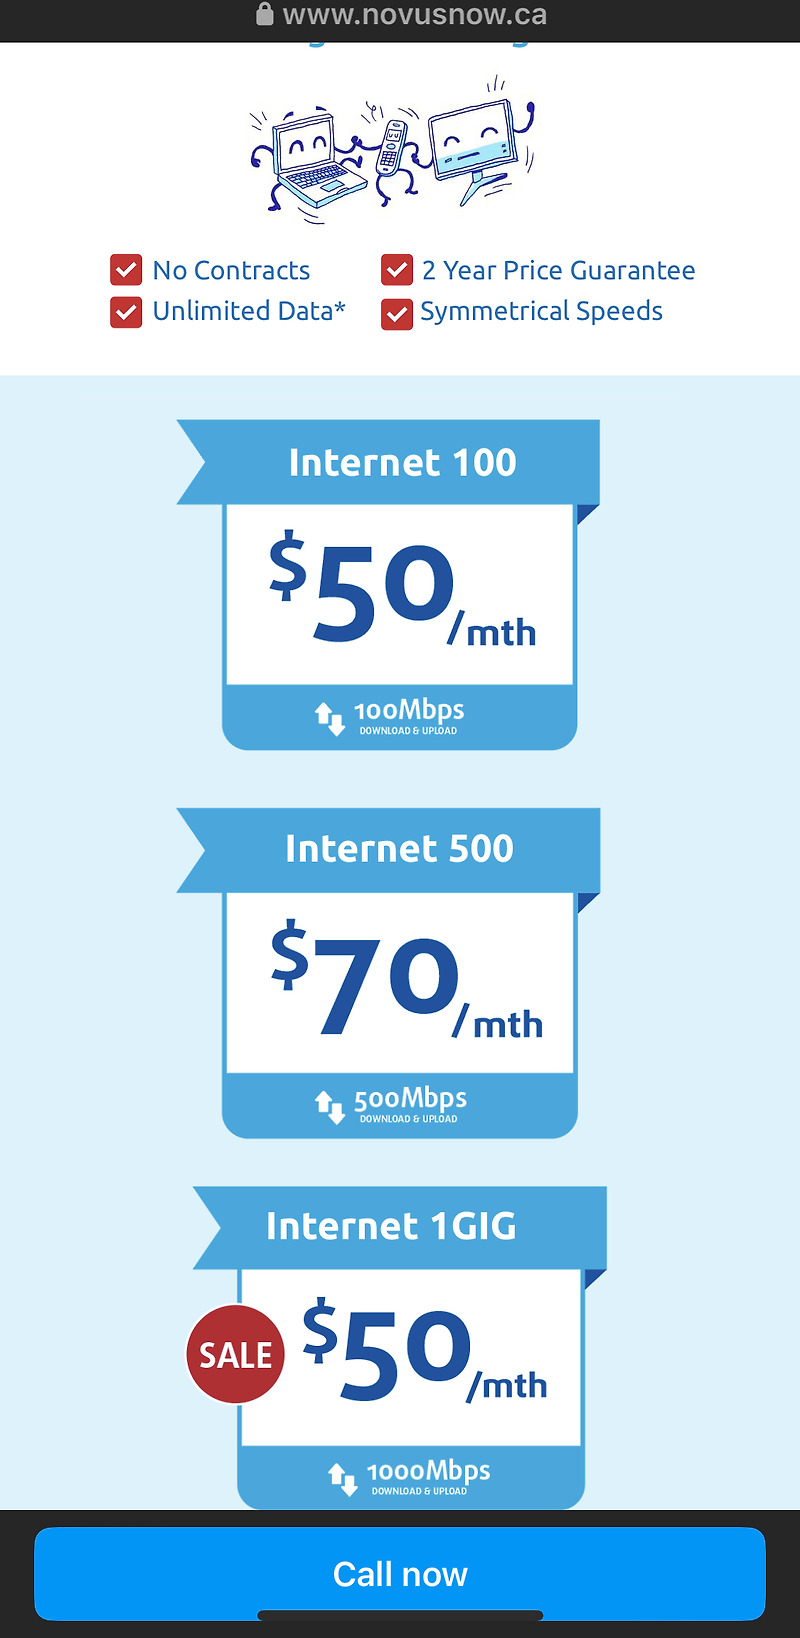 캐나다 인터넷 노버스(Novus) 1GIG 요금제 프로모션 소식 (약정없이 월 50달러에 1000Mbps의 빠른 속도를)